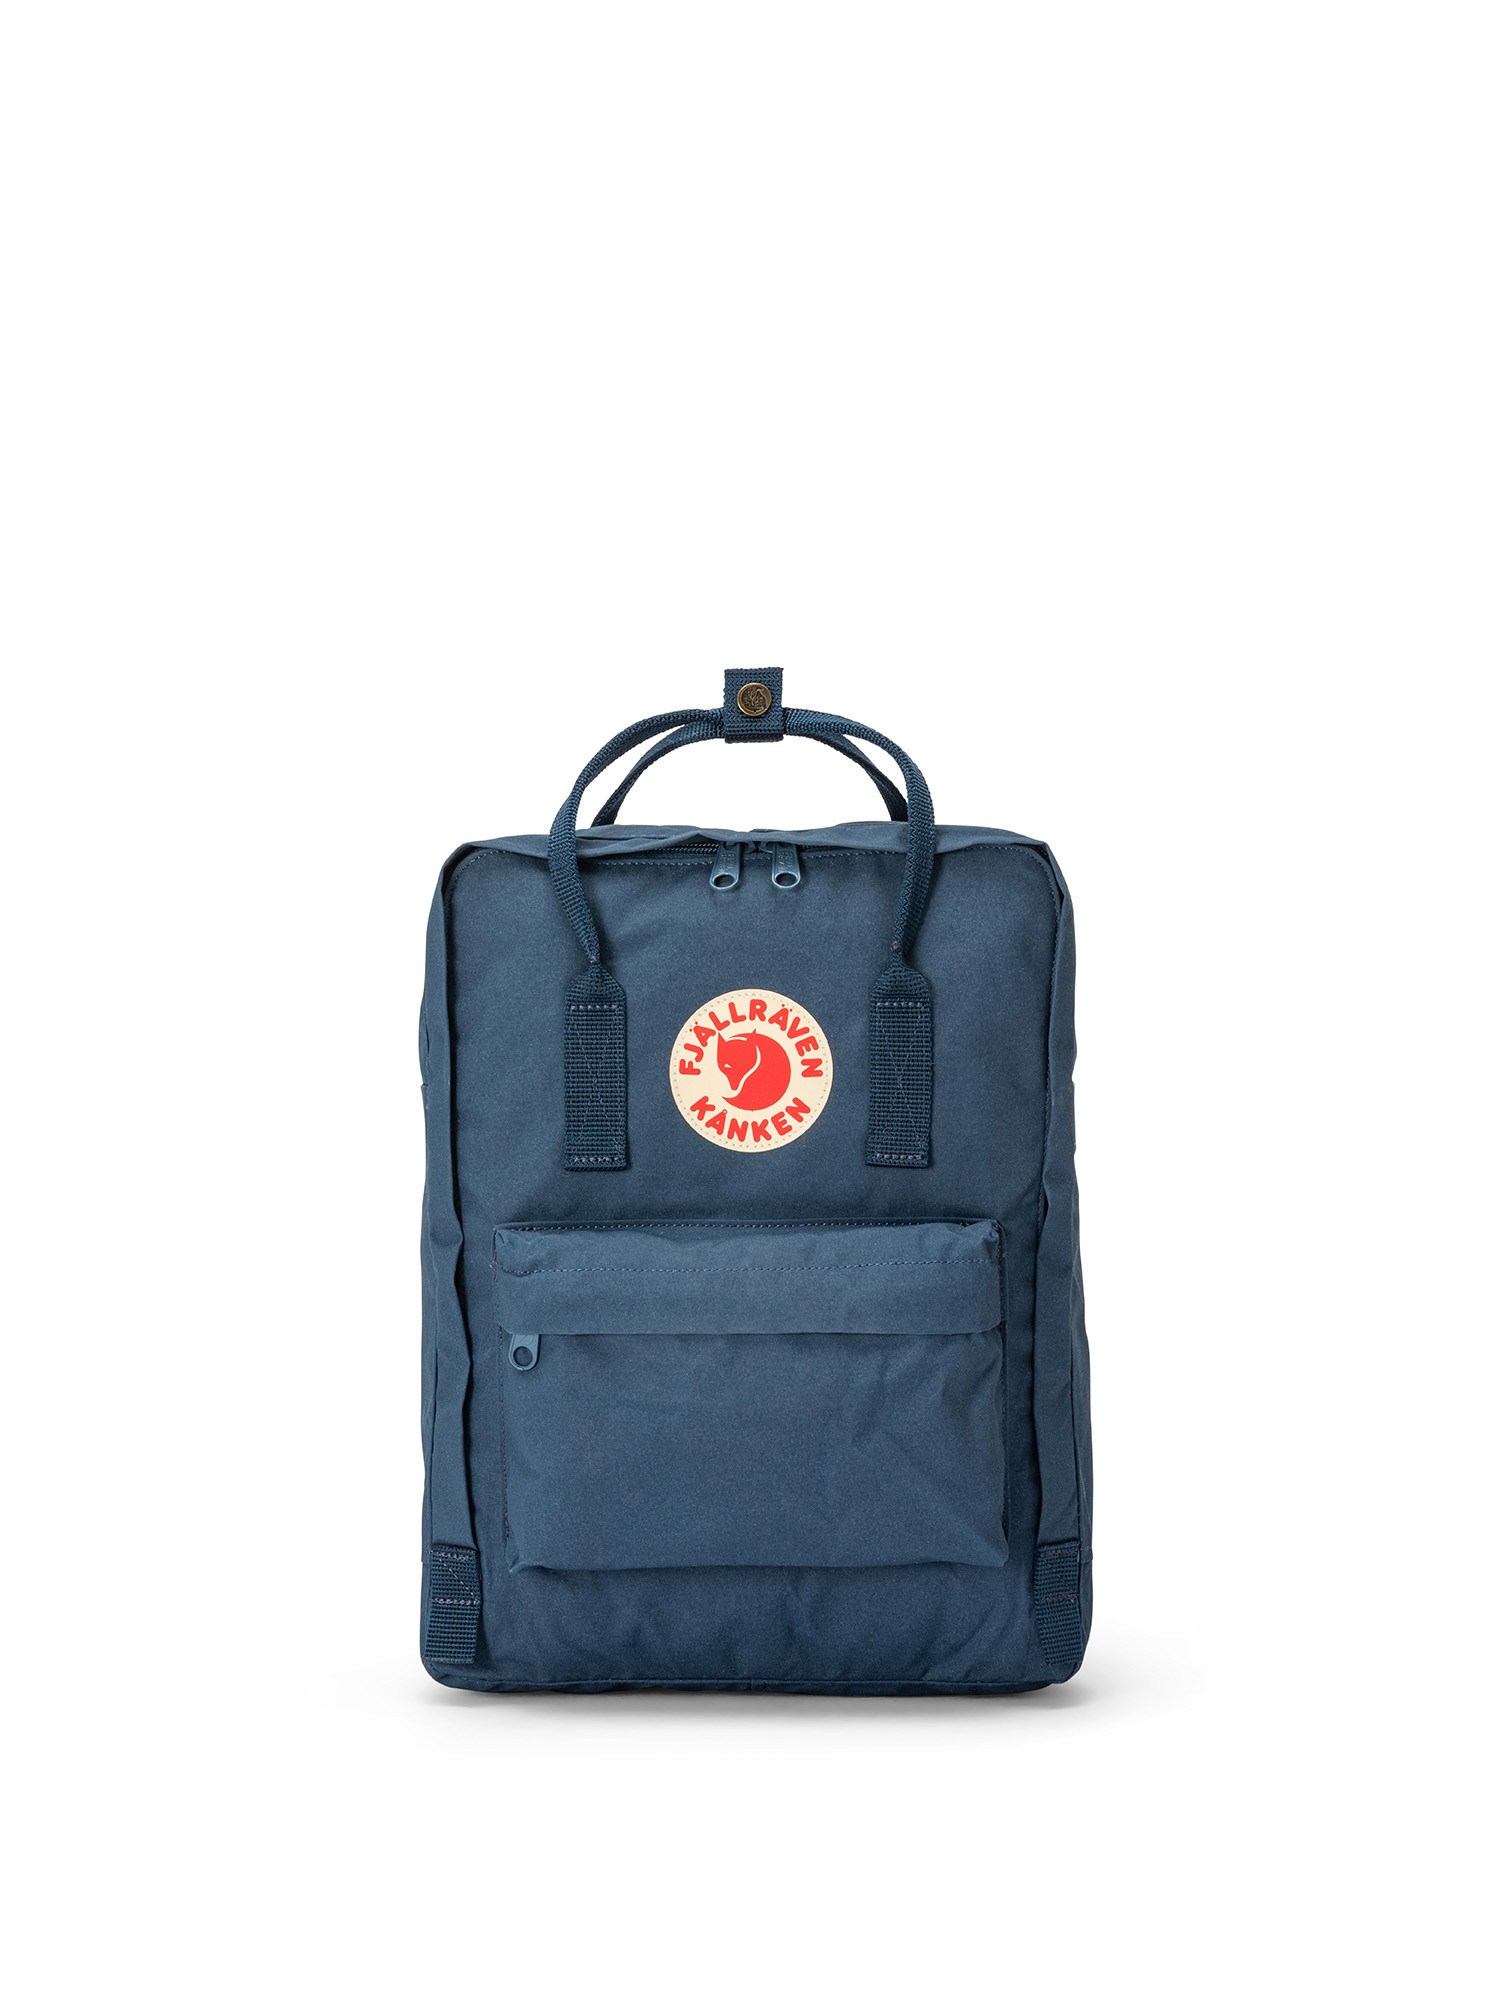 Backpack with adjustable shoulder straps, Blue, large image number 0